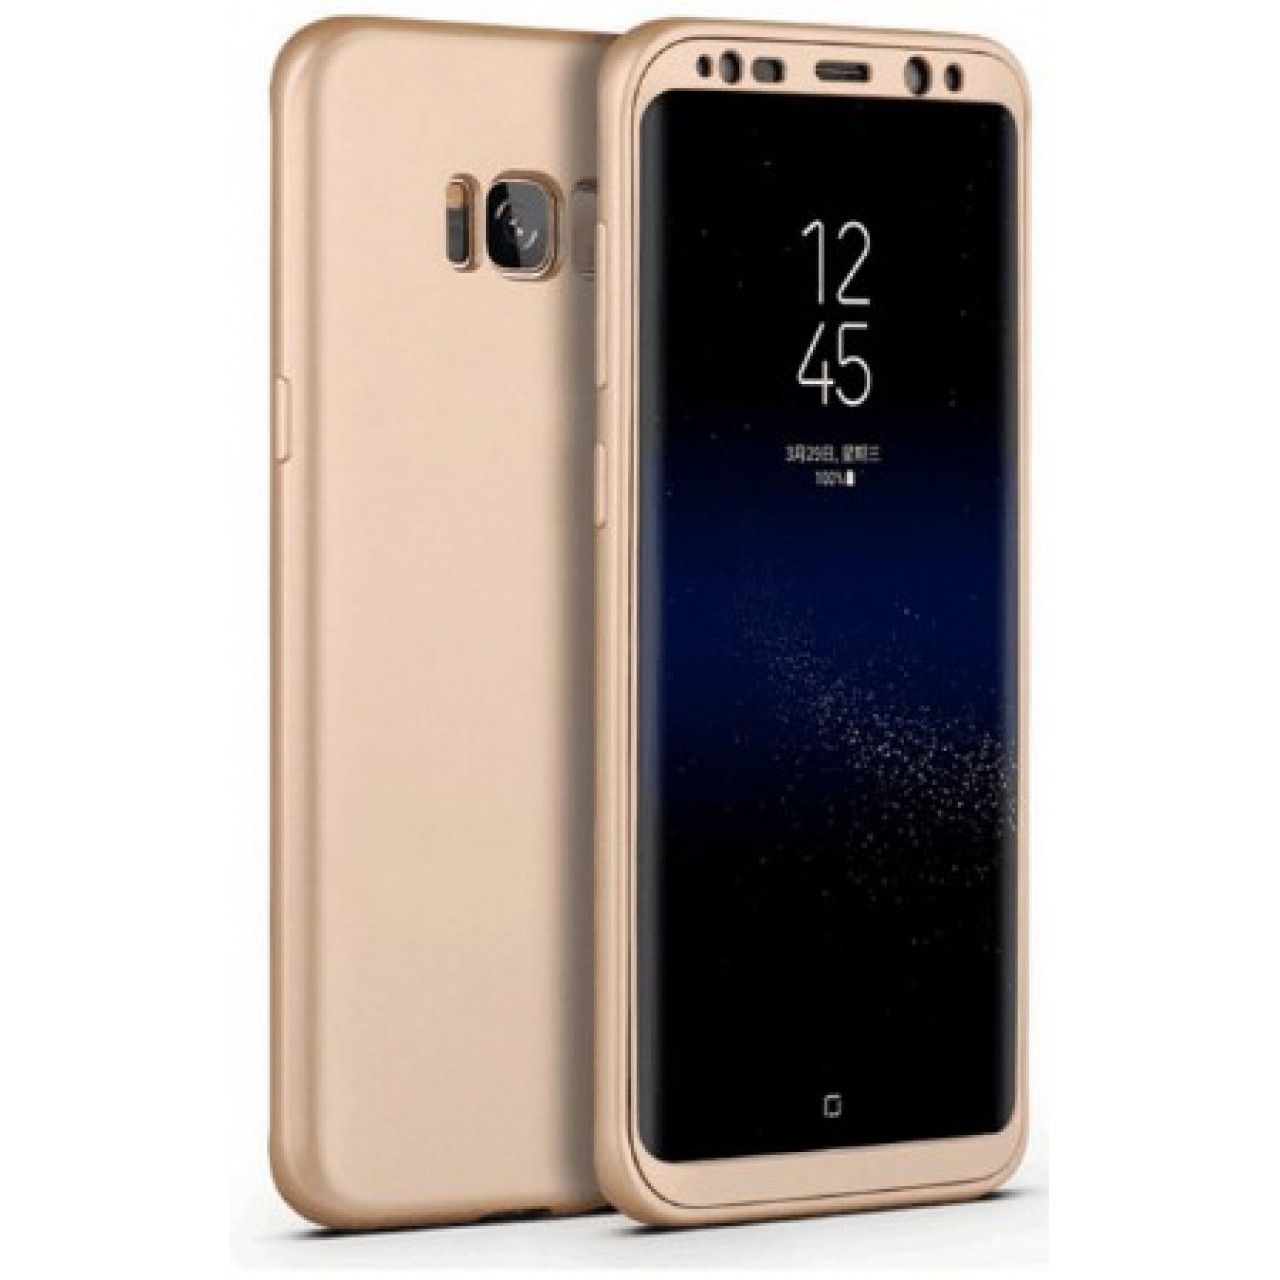 Θήκη Samsung Galaxy S8 Plus Πλαστική 360 Full body - 3297 - Ροζ Χρυσό - OEM